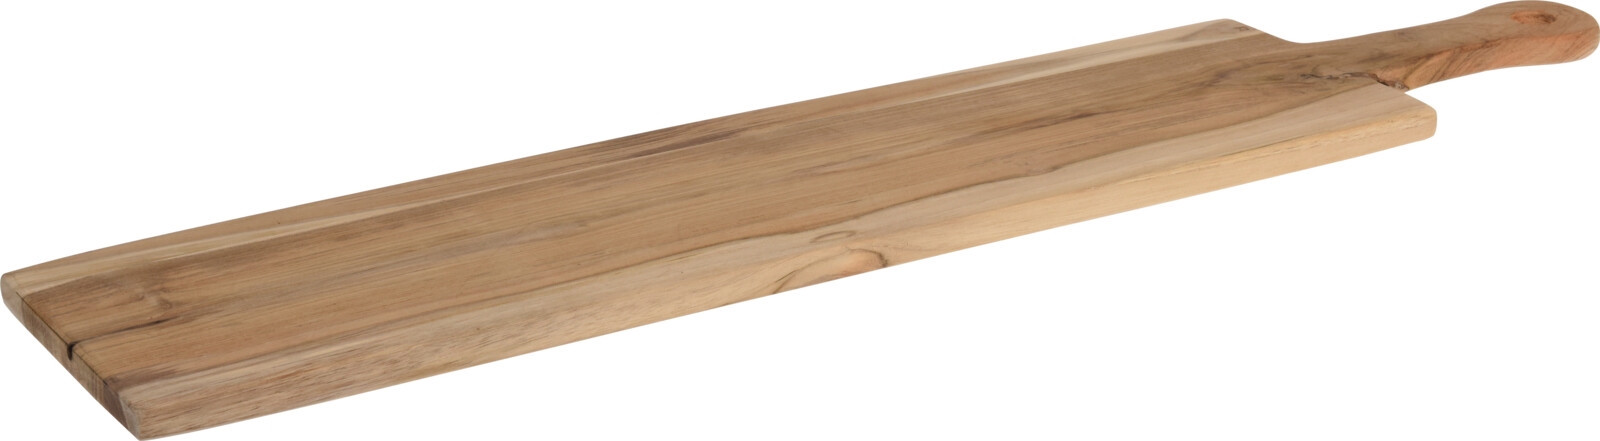 Picture of Teakhouten plank met handvat 70x15x1,5 cm